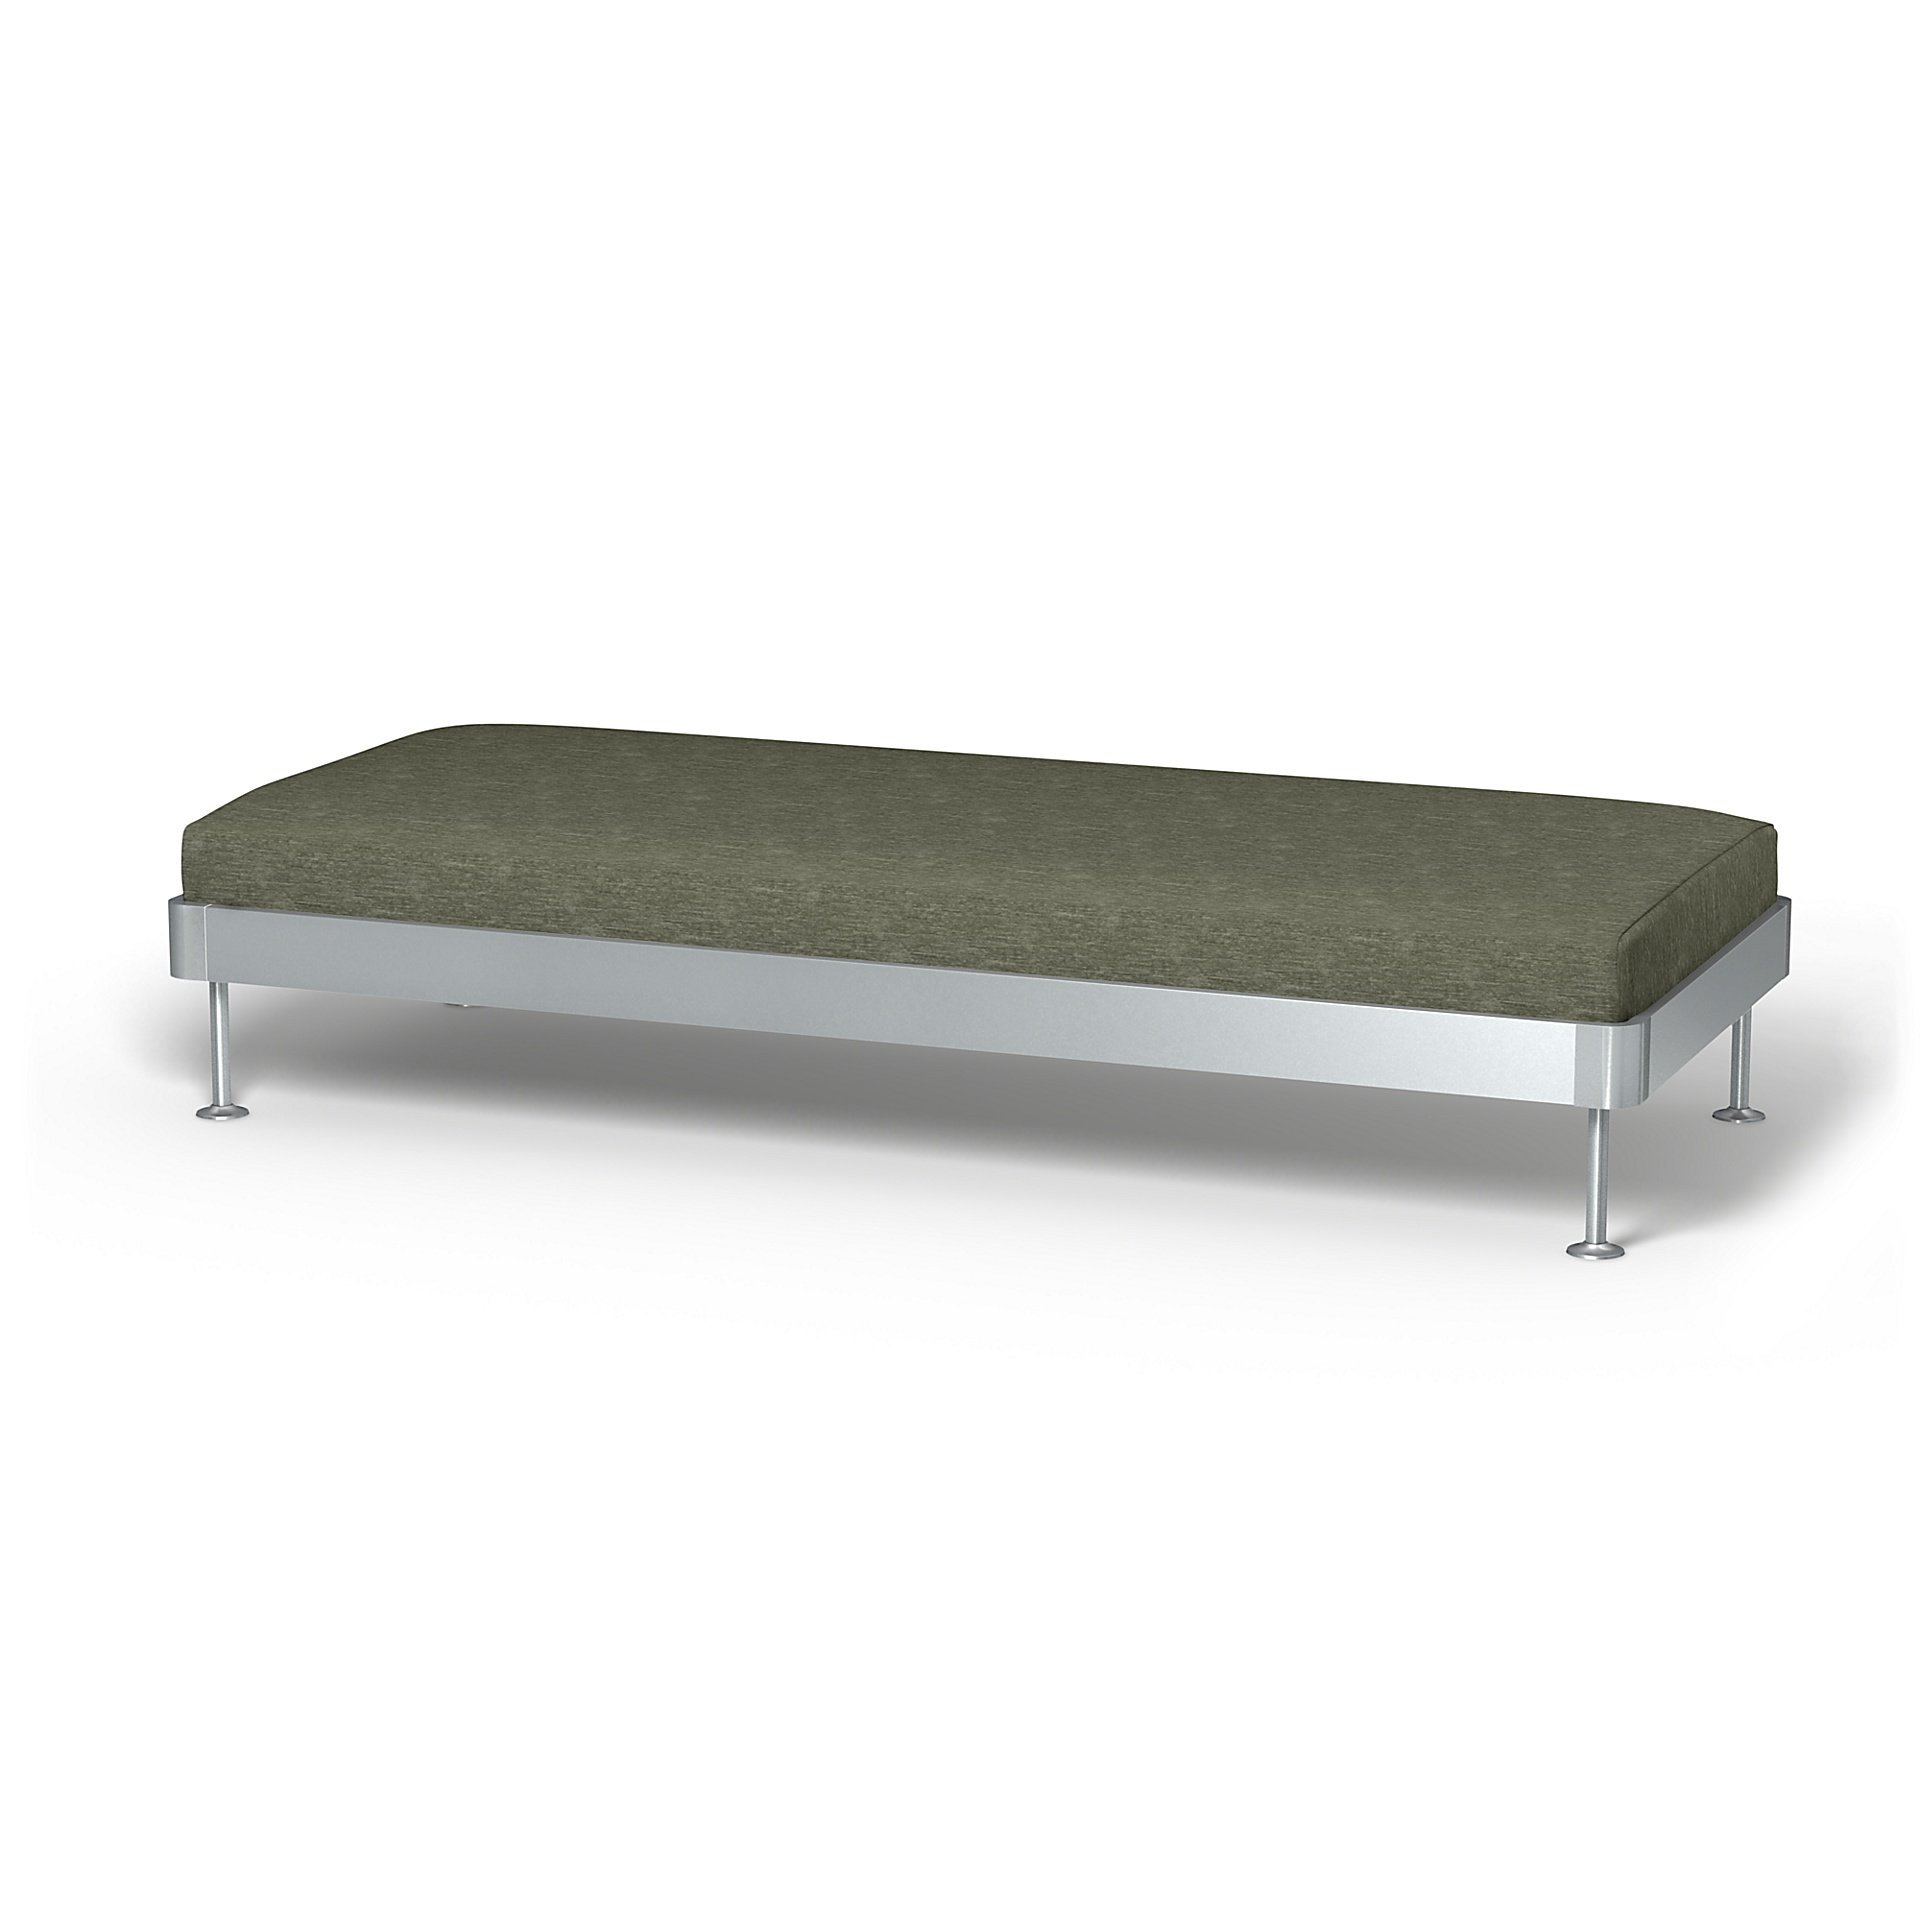 IKEA - Delaktig 3 Seat Platform Cover, Green Grey, Velvet - Bemz